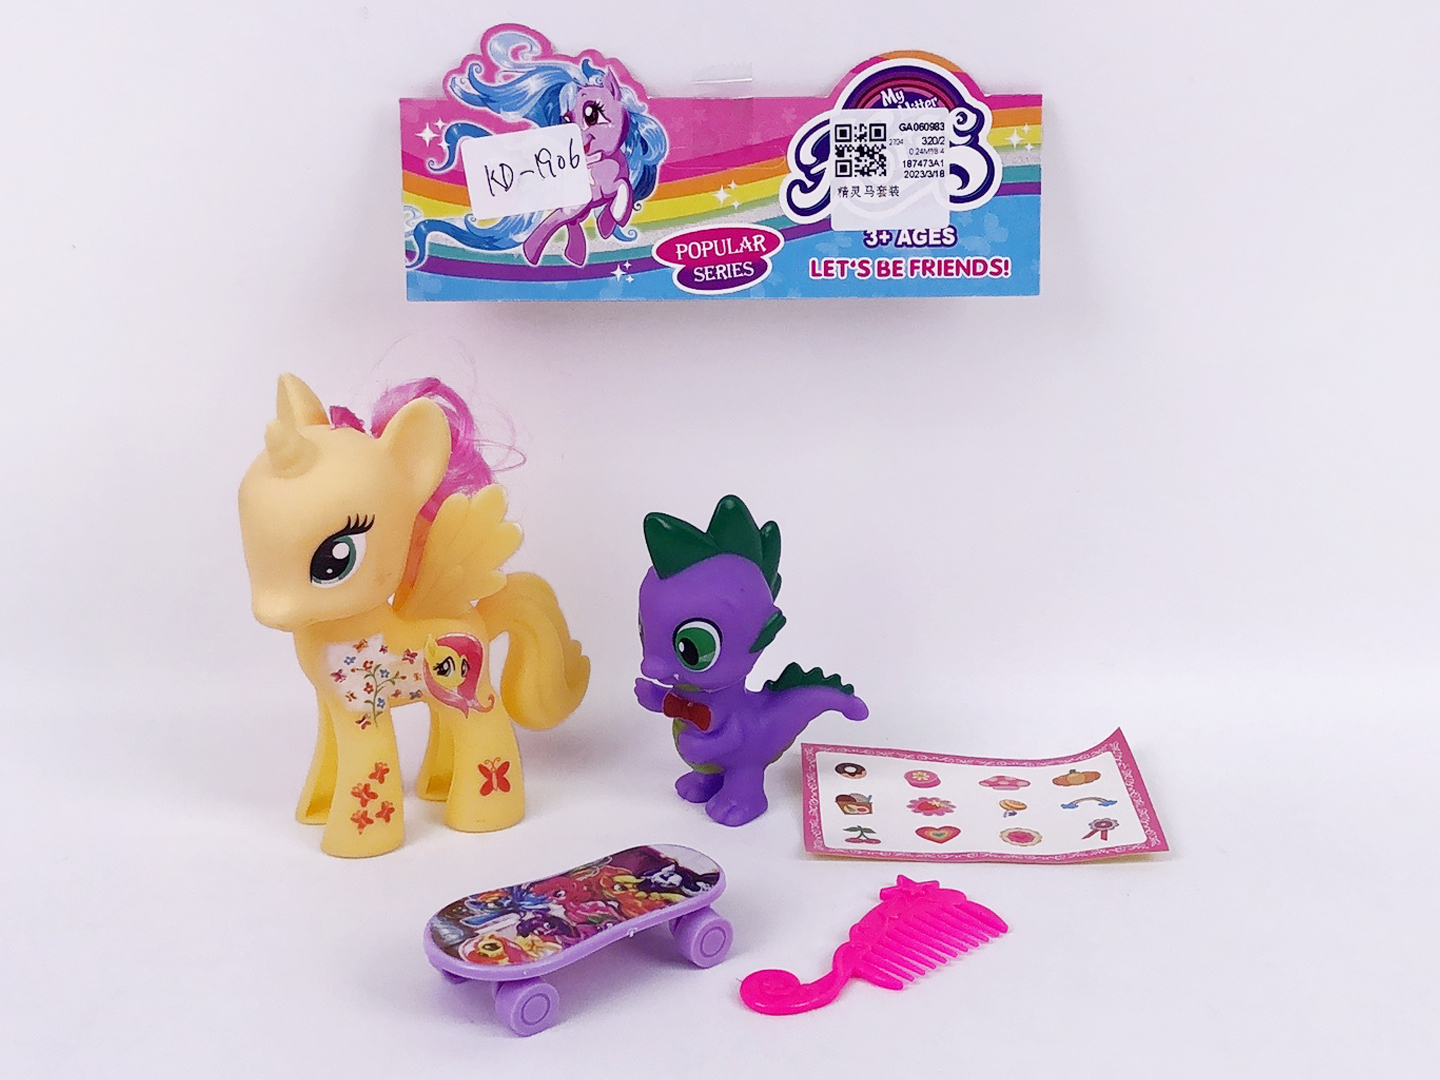 Eidolon Horse Set toys